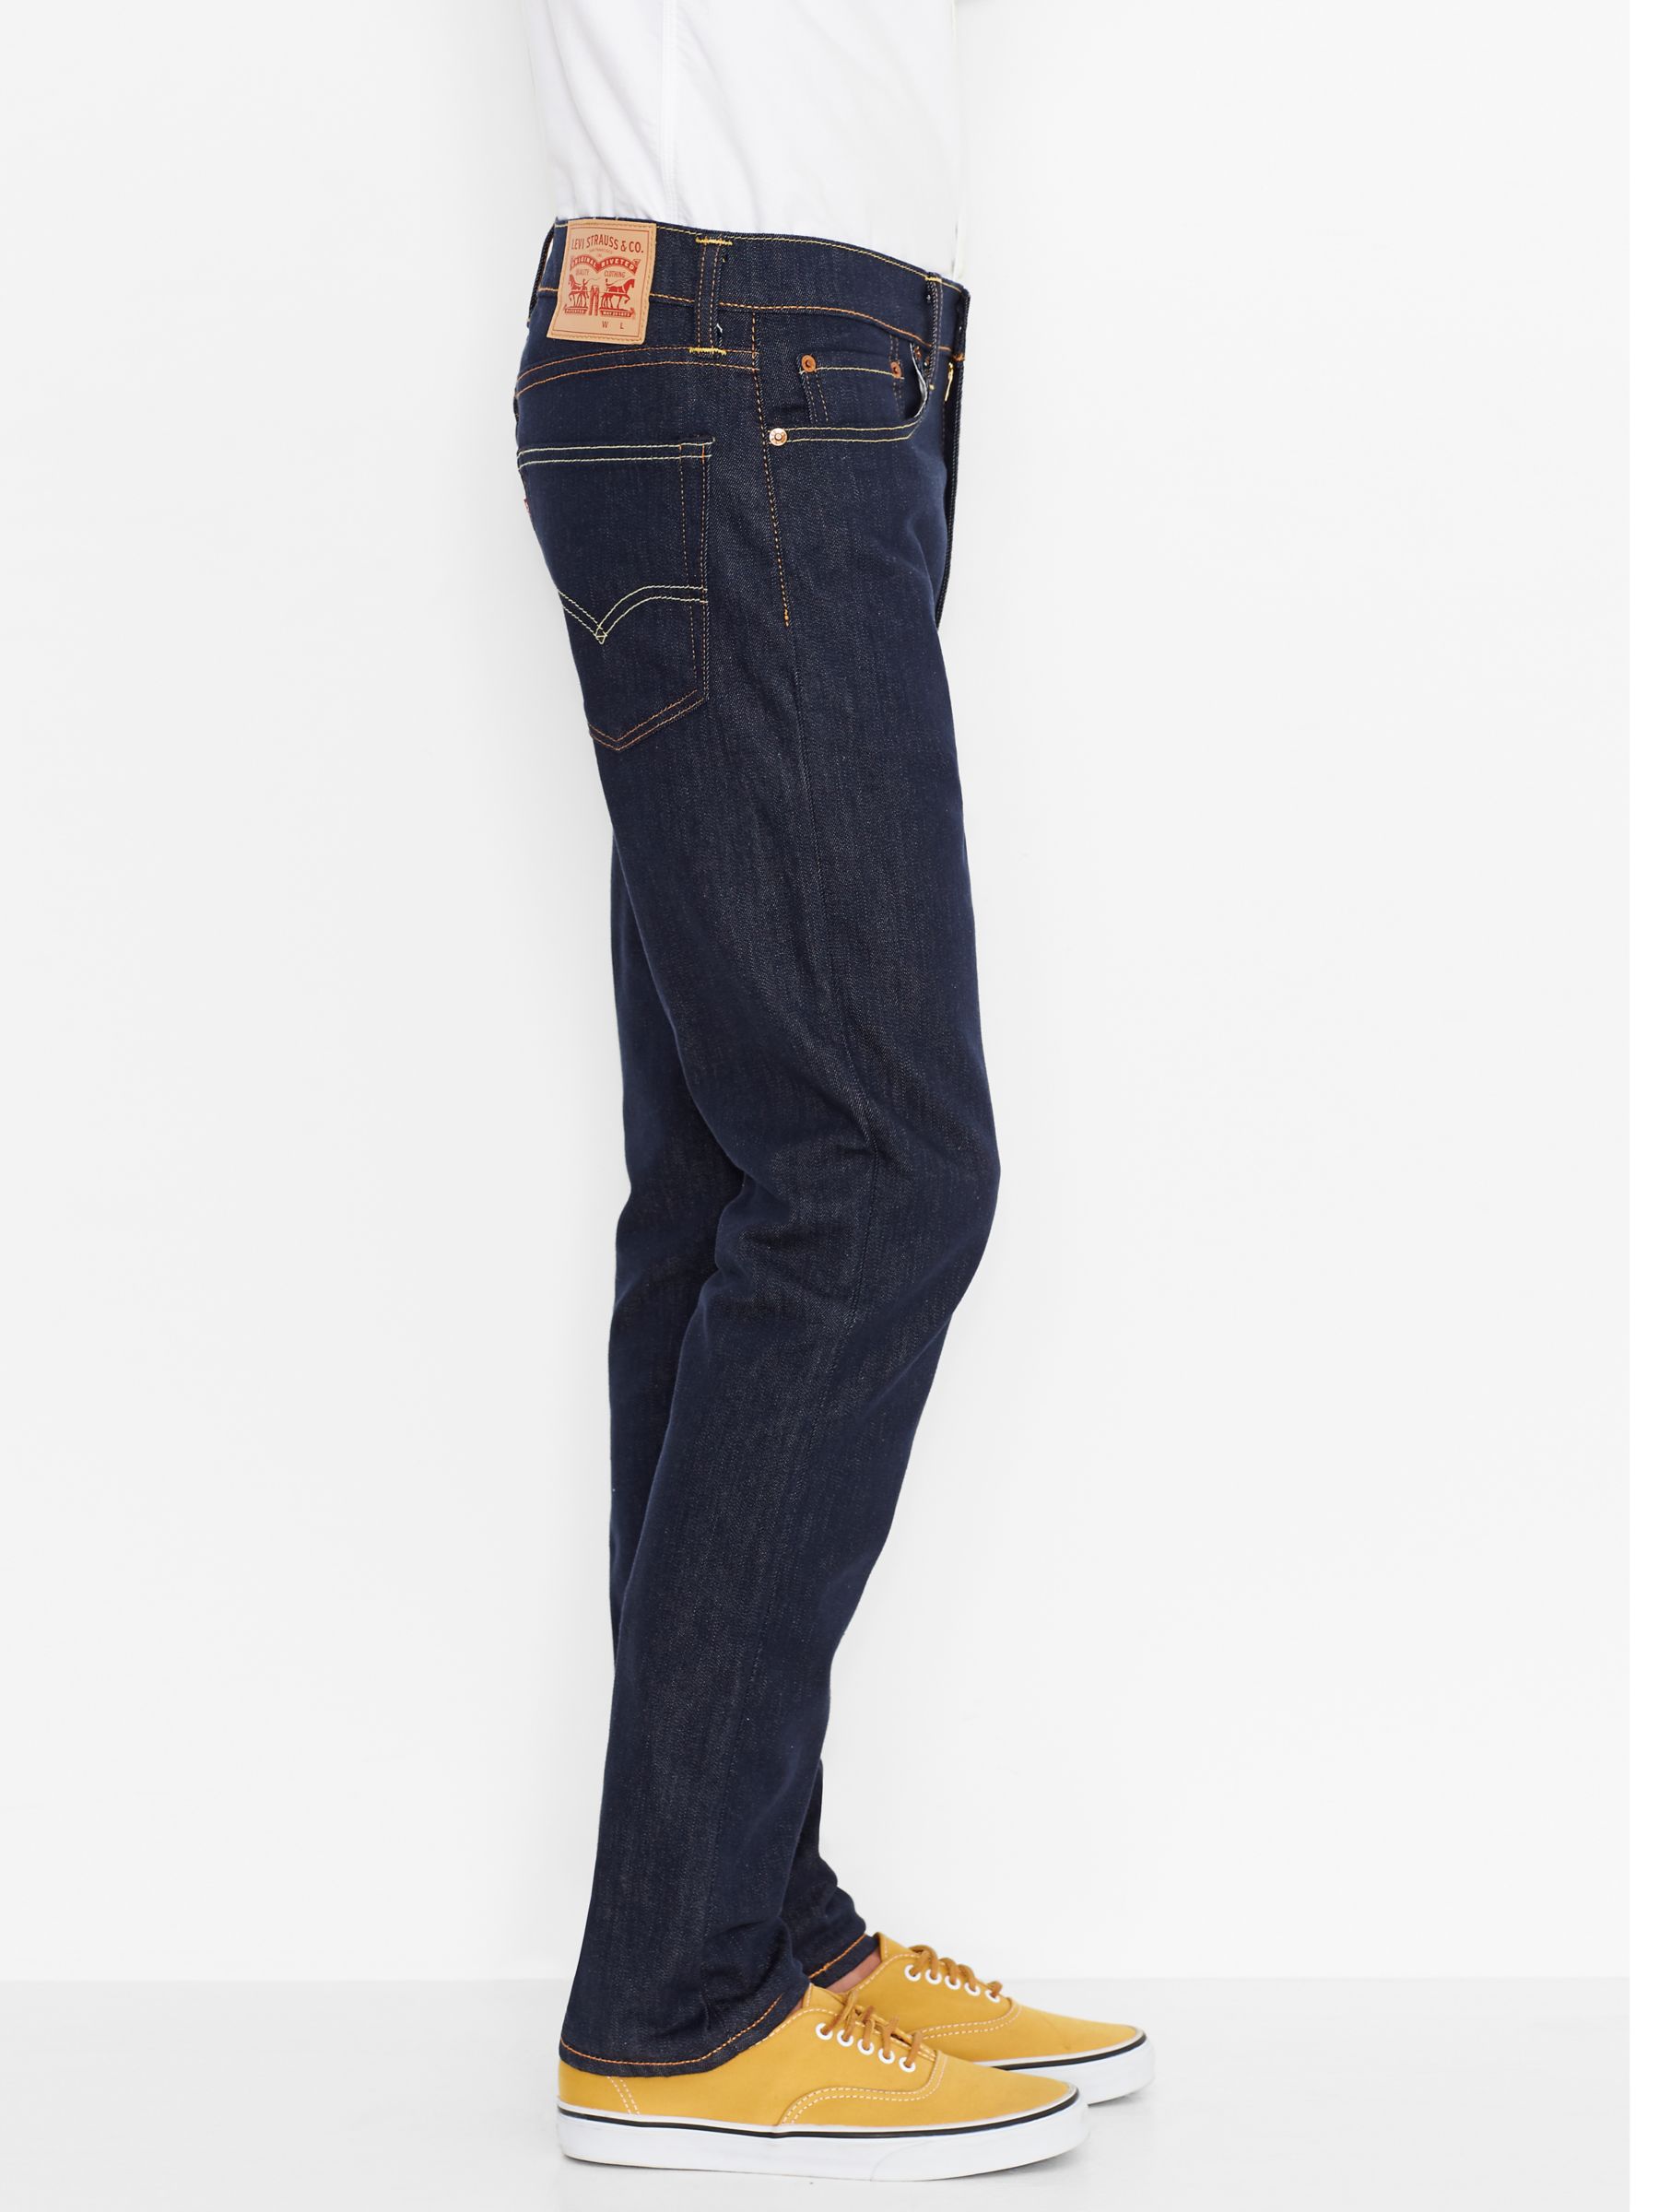 levis jeans 522